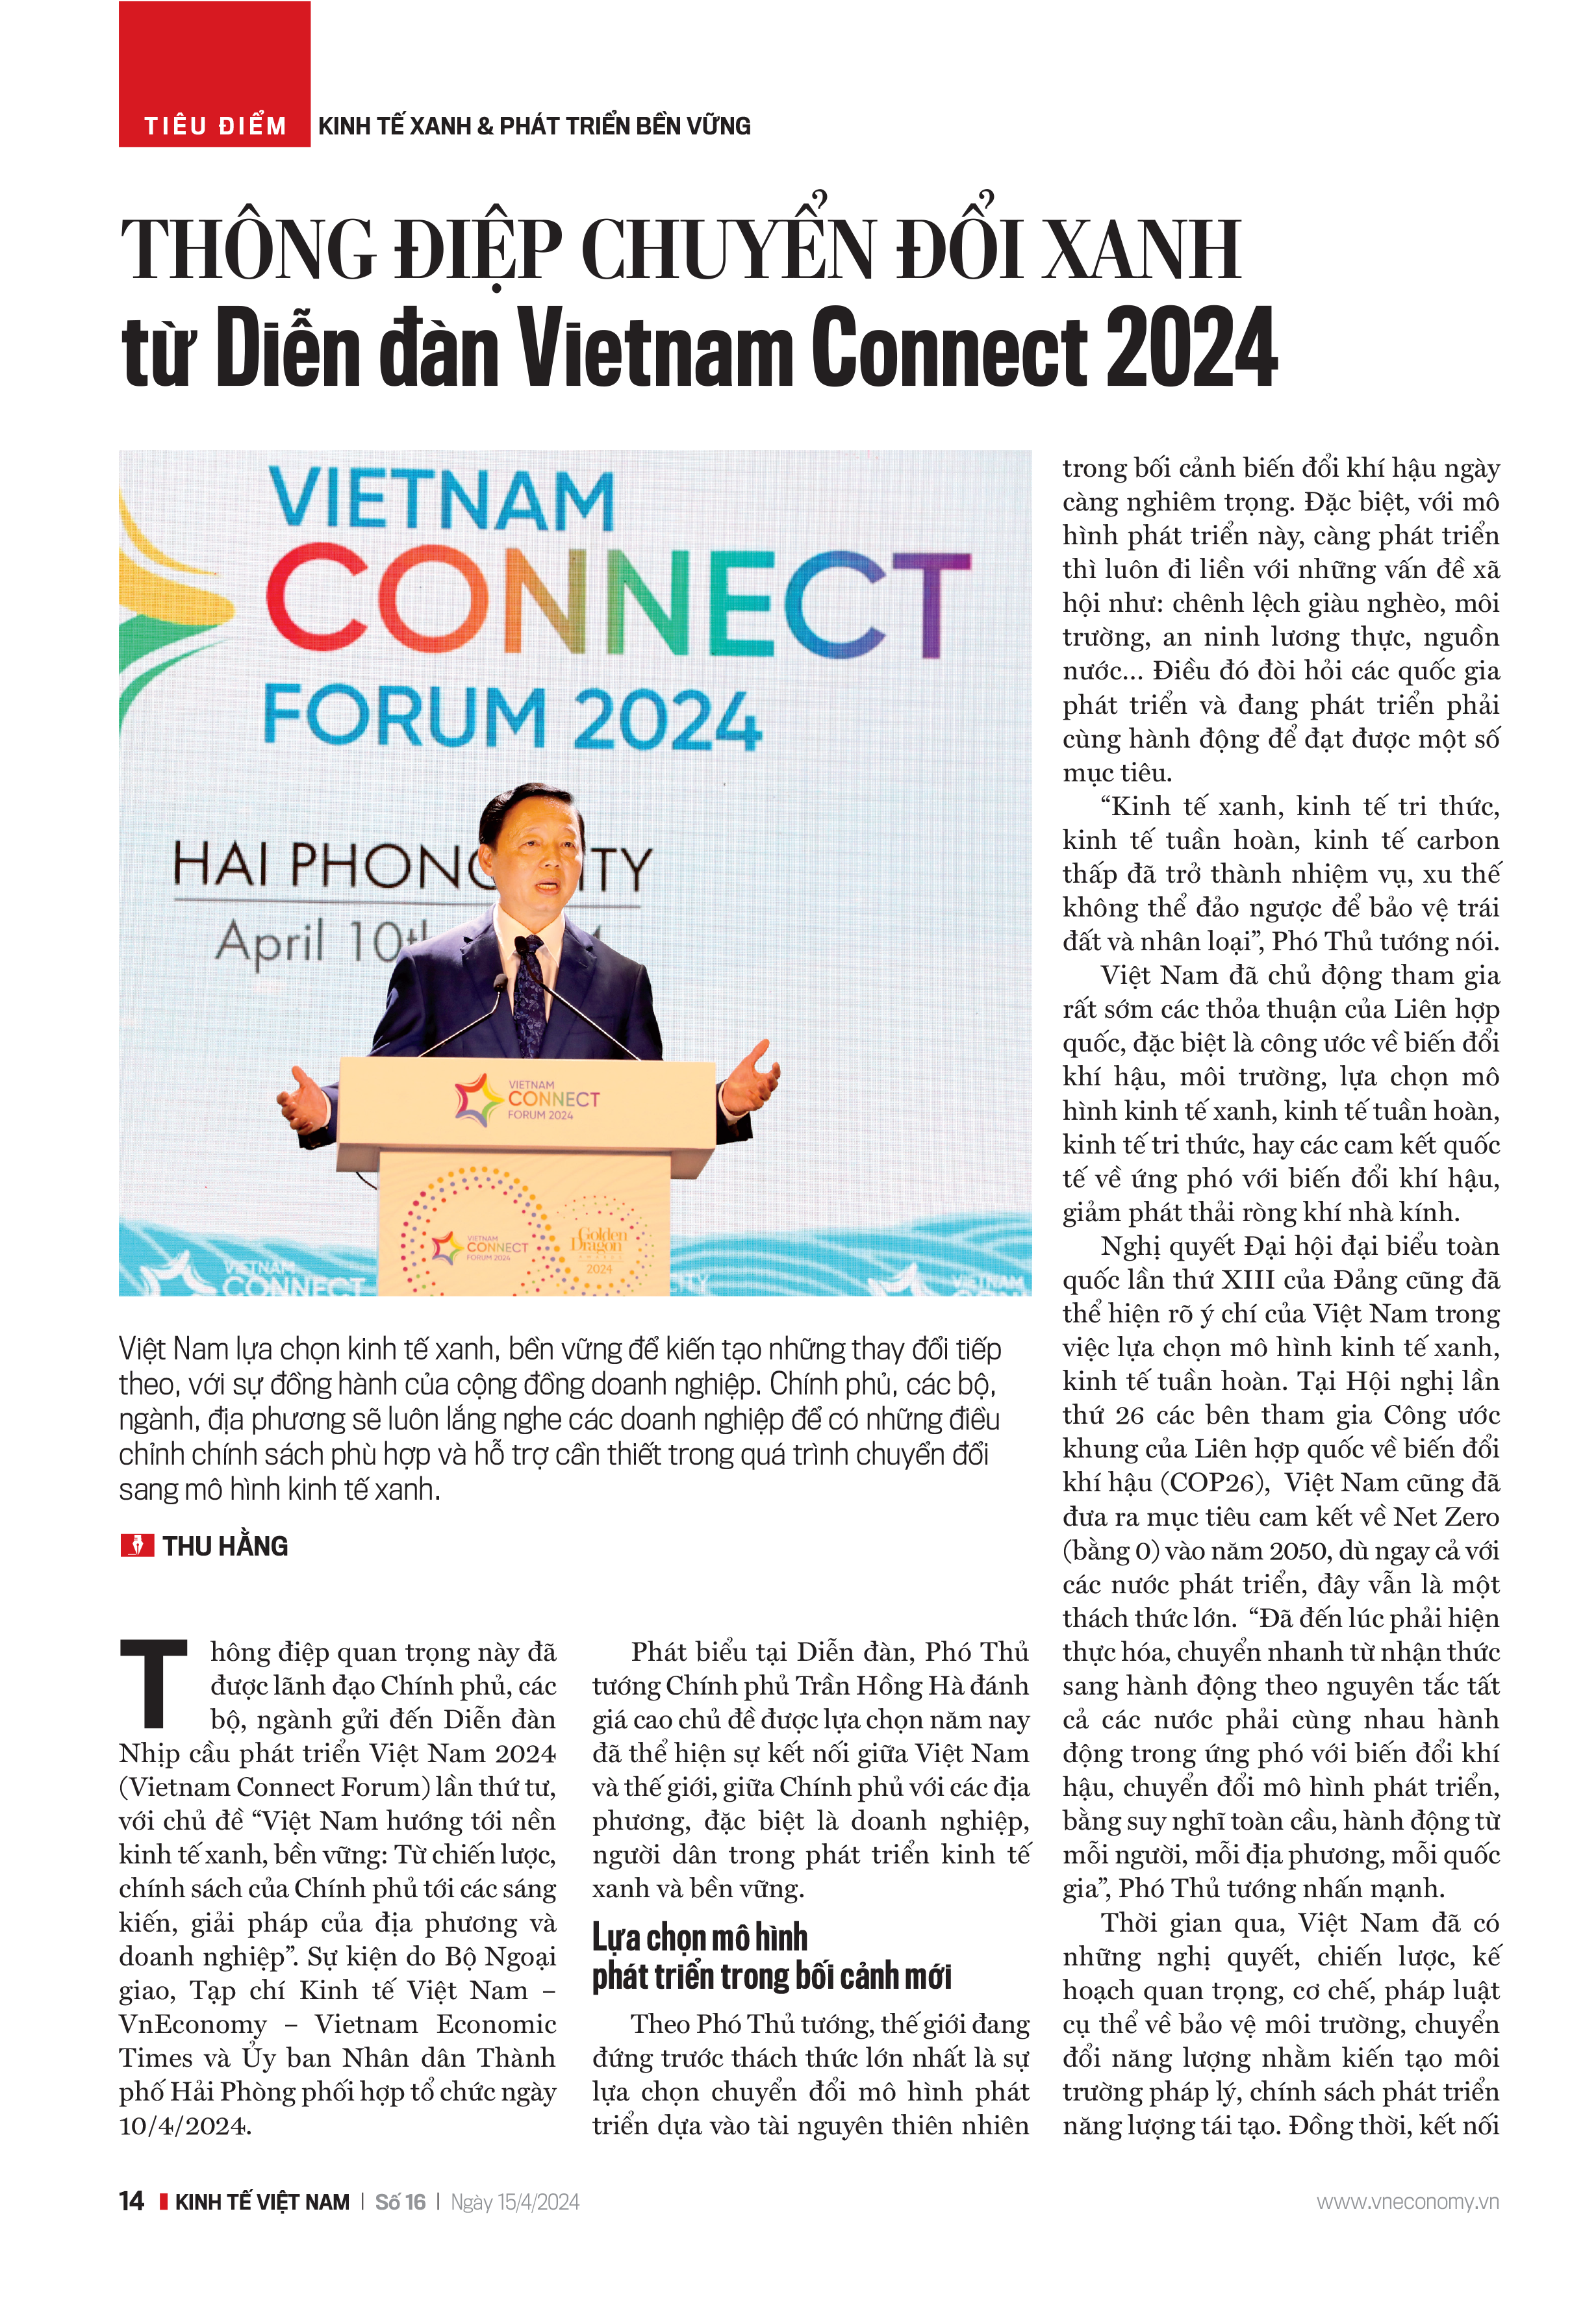 Thông điệp chuyển đổi xanh từ Diễn đàn Vietnam Connect 2024 - Ảnh 12